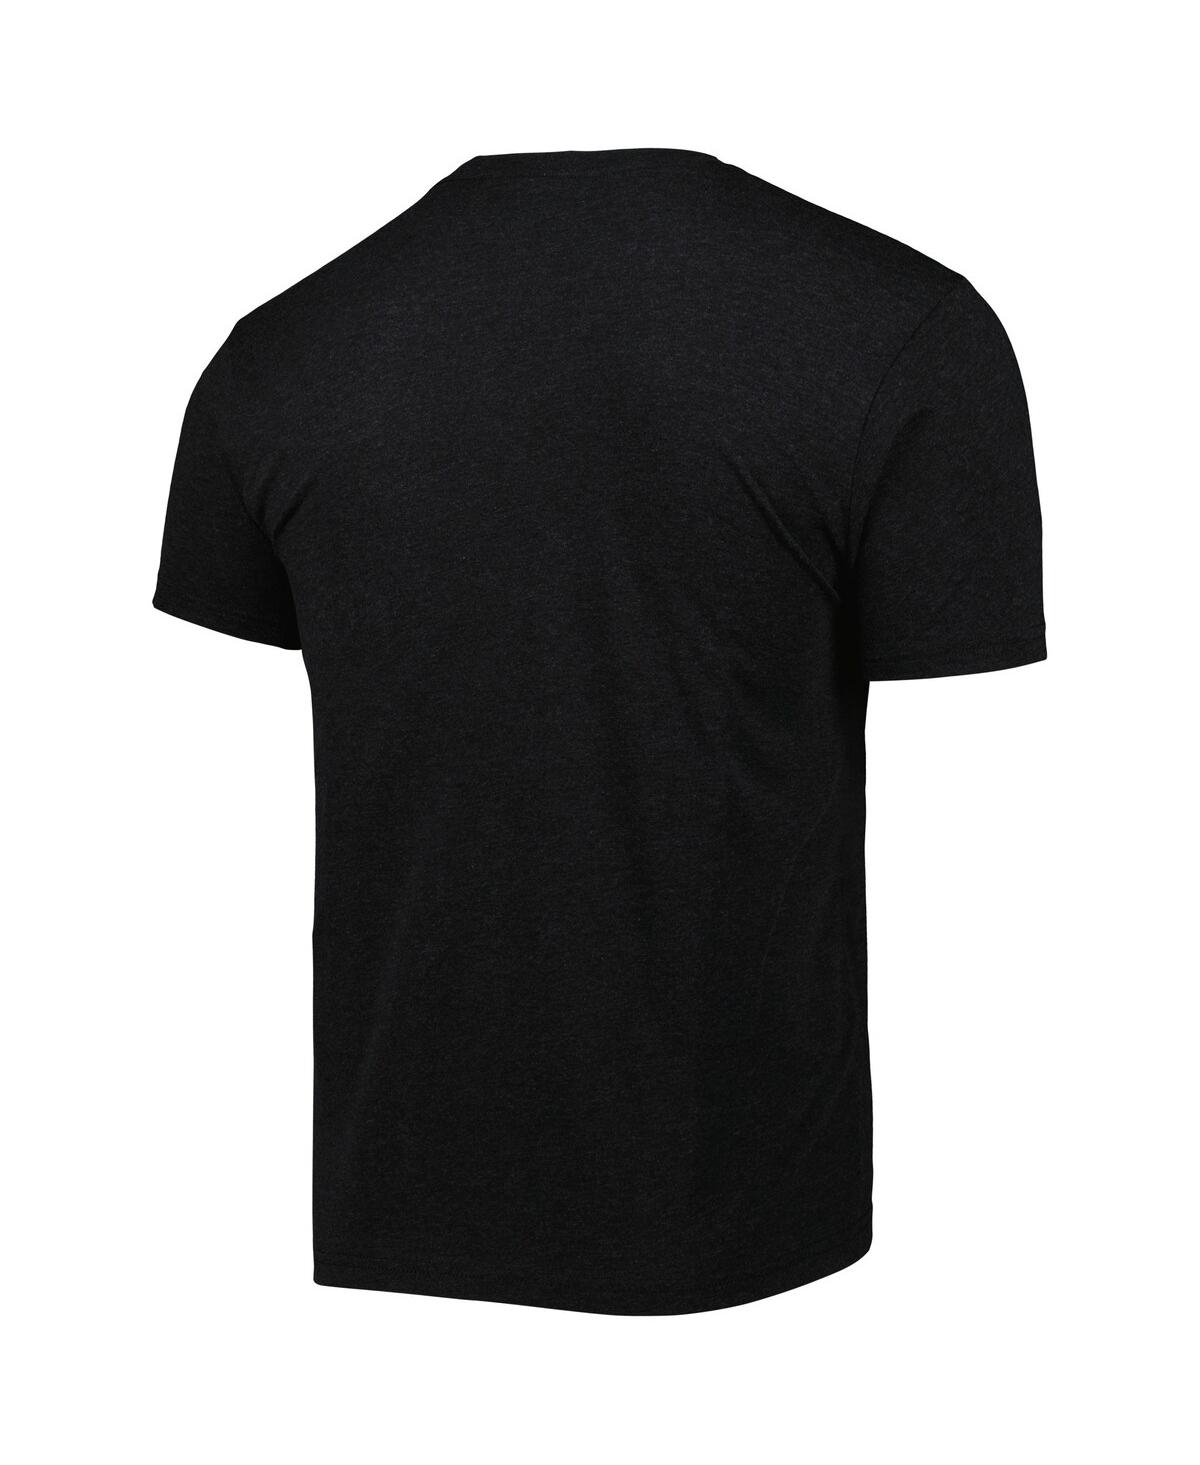 Shop 108 Stitches Men's Black Alebrijes De Modesto Copa De La Diversion Home Tri-blend T-shirt